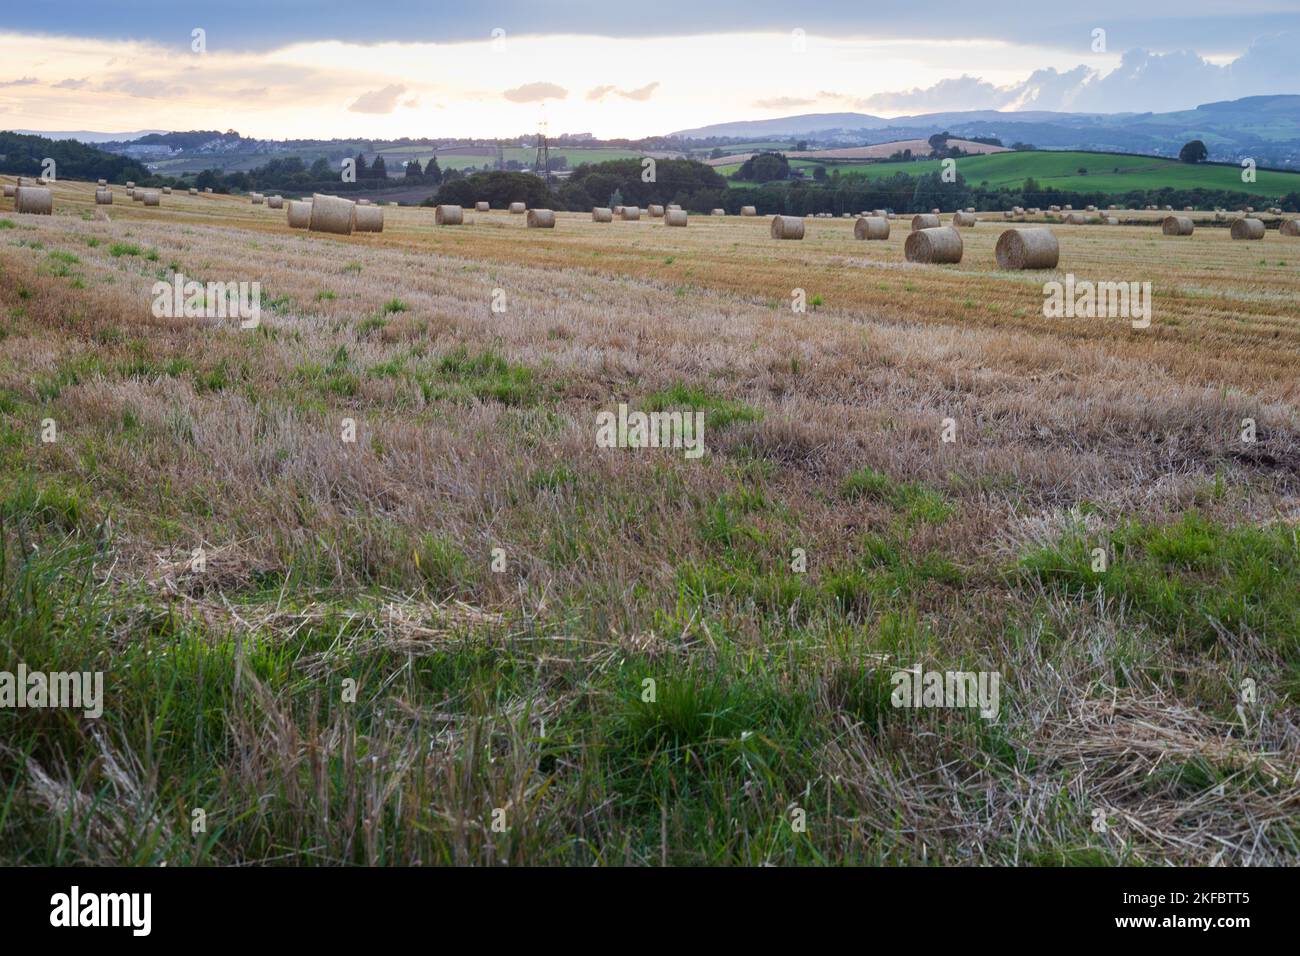 Power Pylons in a farm field Stock Photo